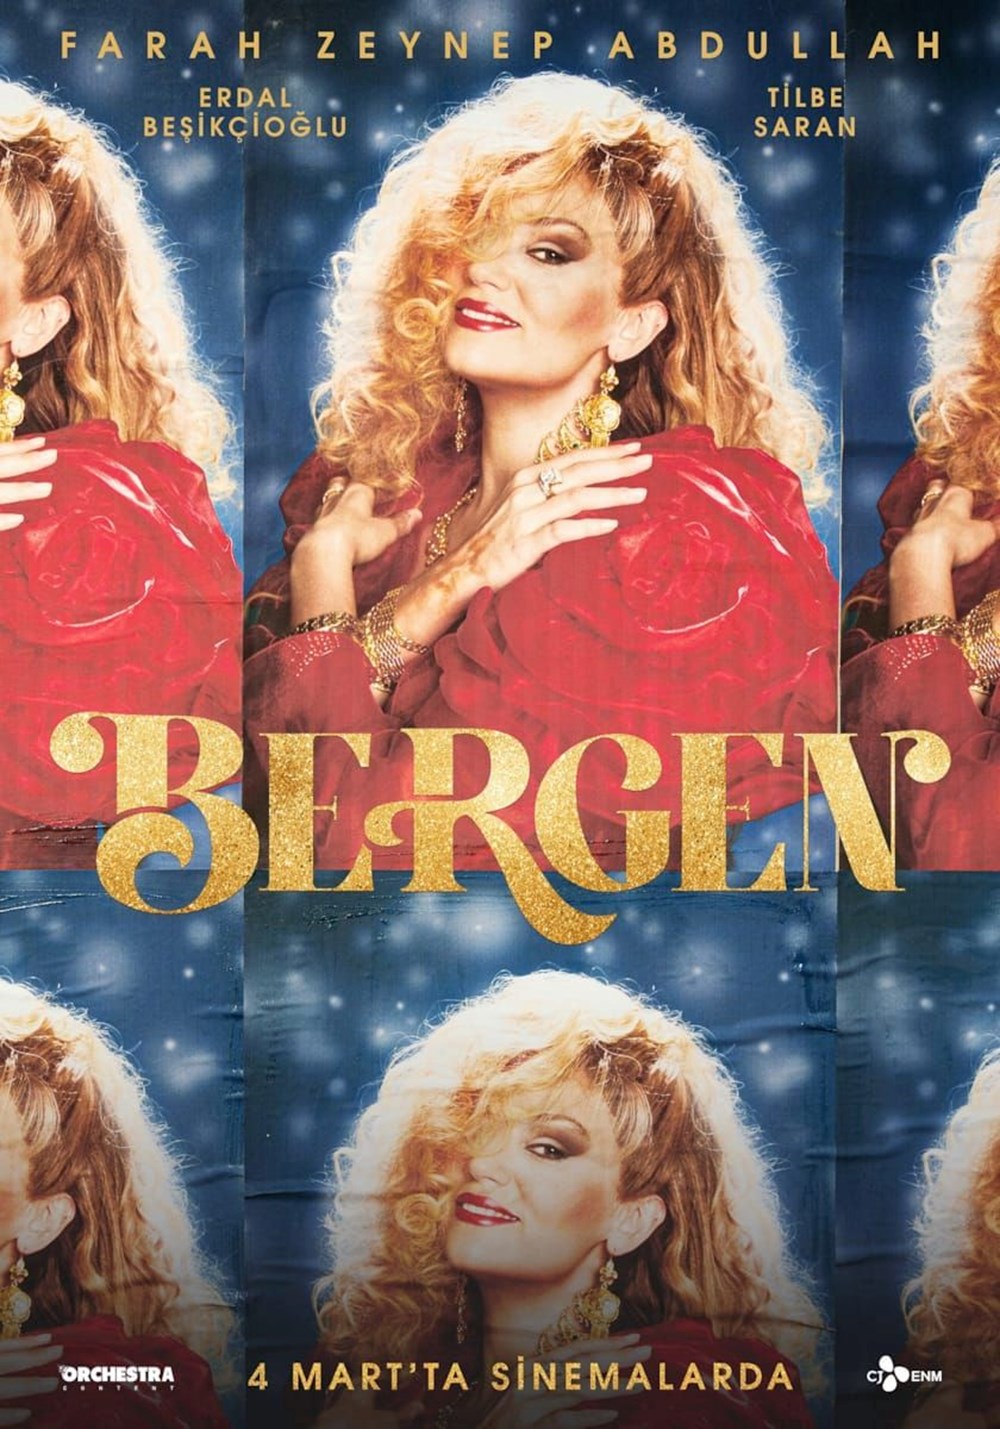 Bergen filmine 10 günde 1.7 milyon seyirci (11-13 Mart Box Office Türkiye) - 10